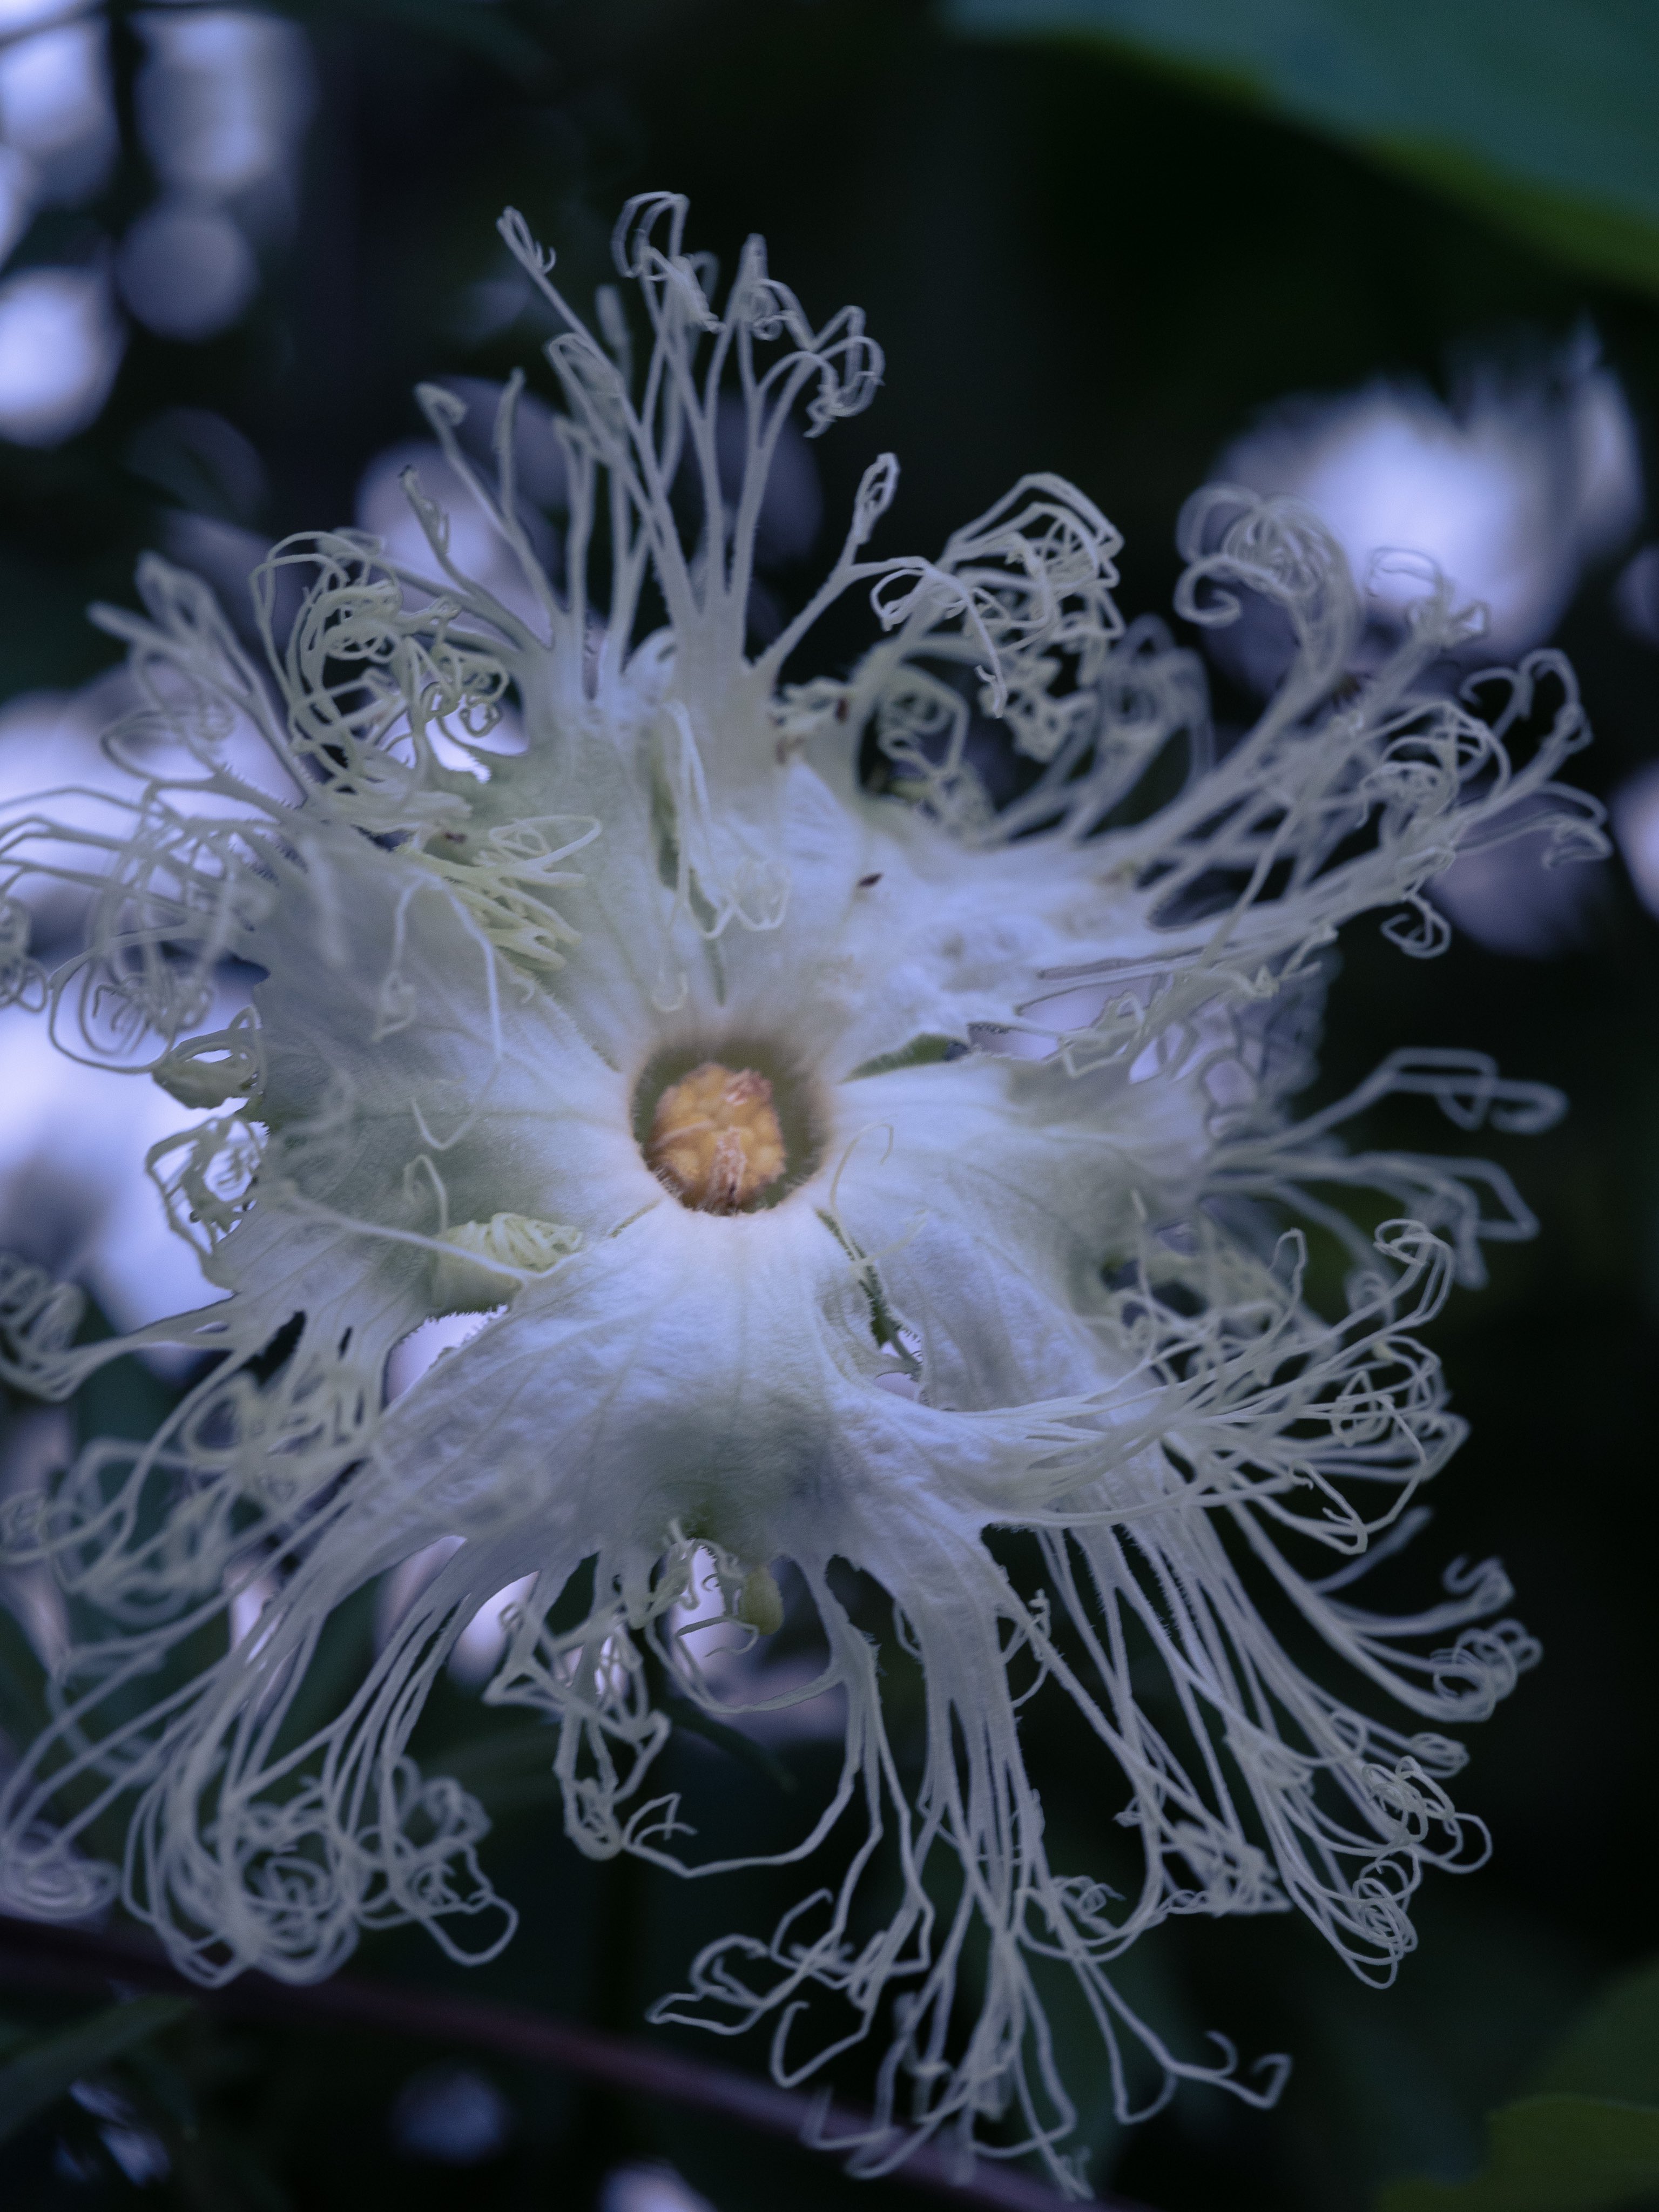 Takao キカラスウリ キカラスウリの花が咲いていました 日本原産 ウリ科 日没後に開花して夜に咲く花です 根から天花粉ができます 天花粉はおしろいの原料やあせもの予防 治療に使われていましたが製造コストの安いベビーパウダー等に代わっていき現在